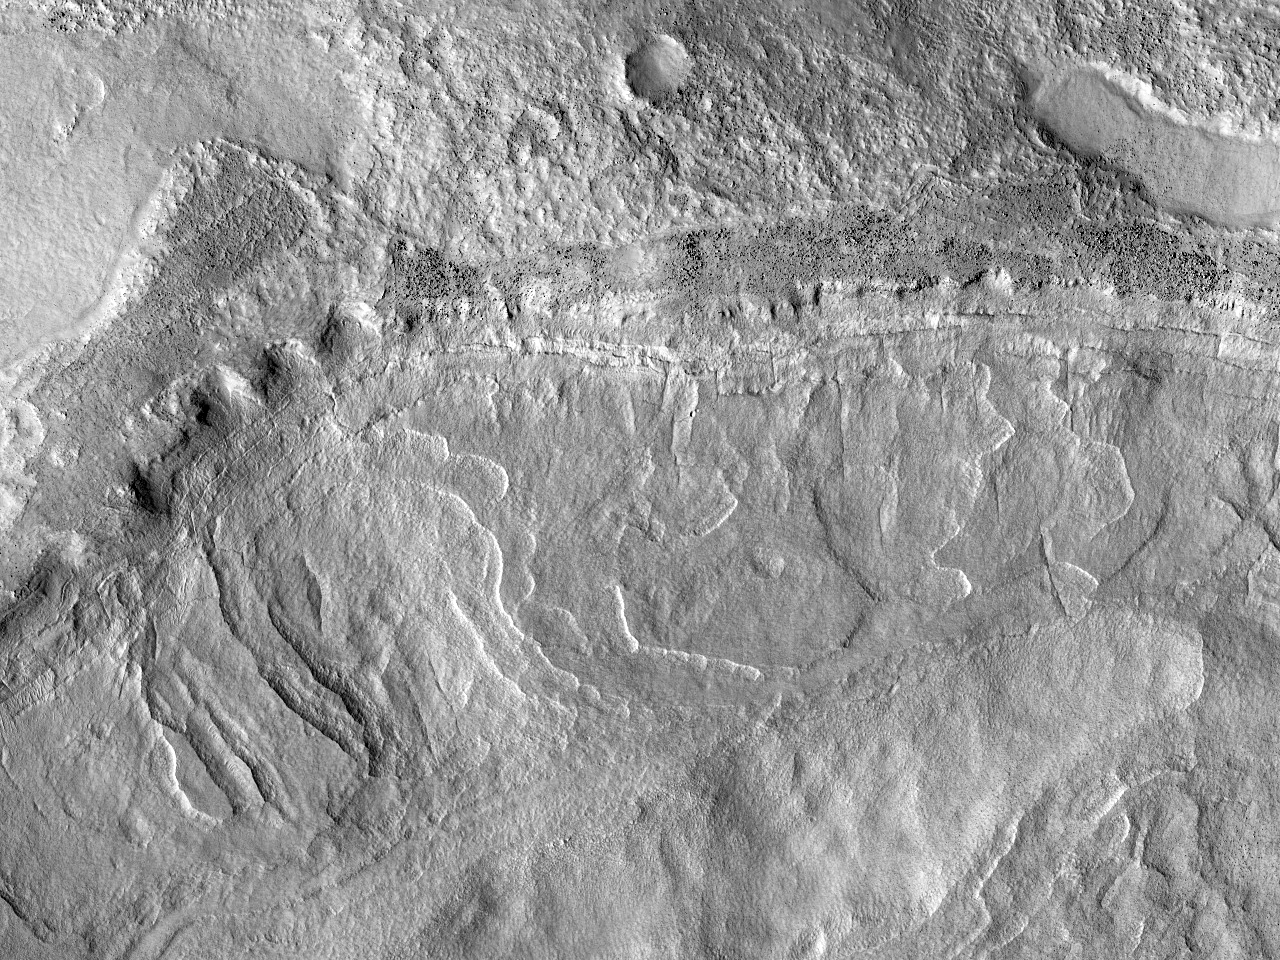 Cratera antiga com depsitos em camadas